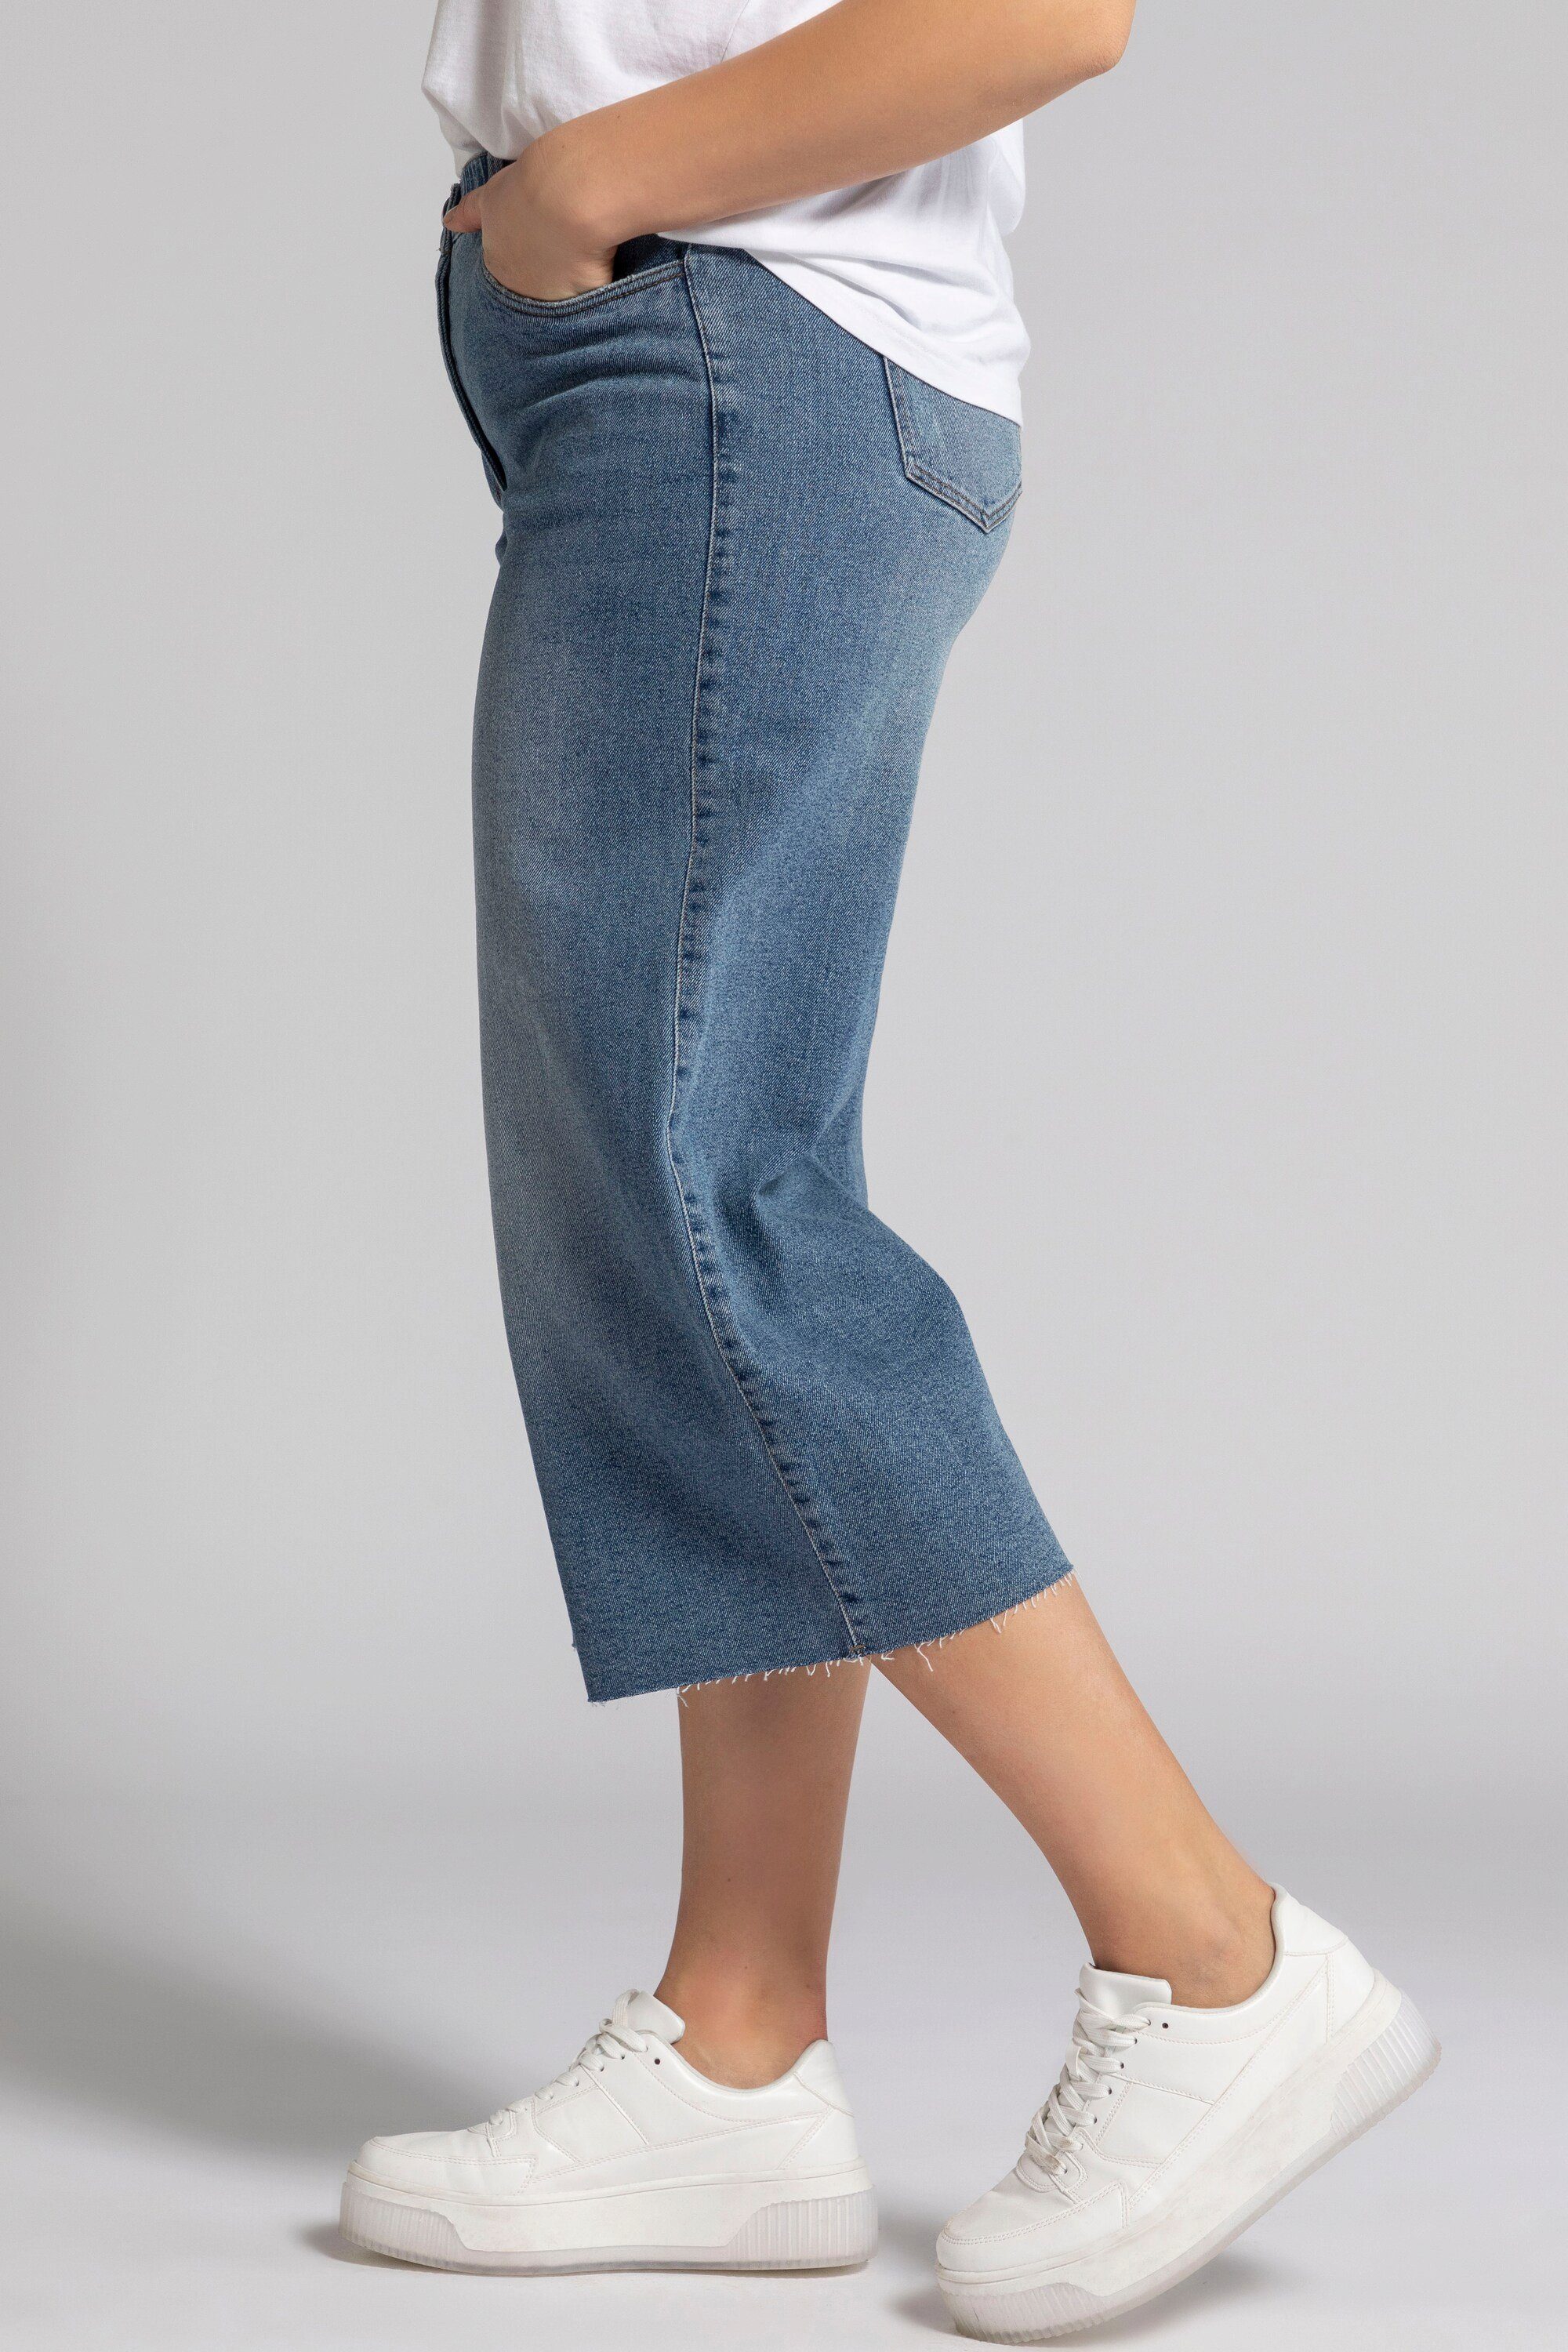 Fransensaum weites Culottes Bein Jeans Studio Culotte Untold Elastikbund